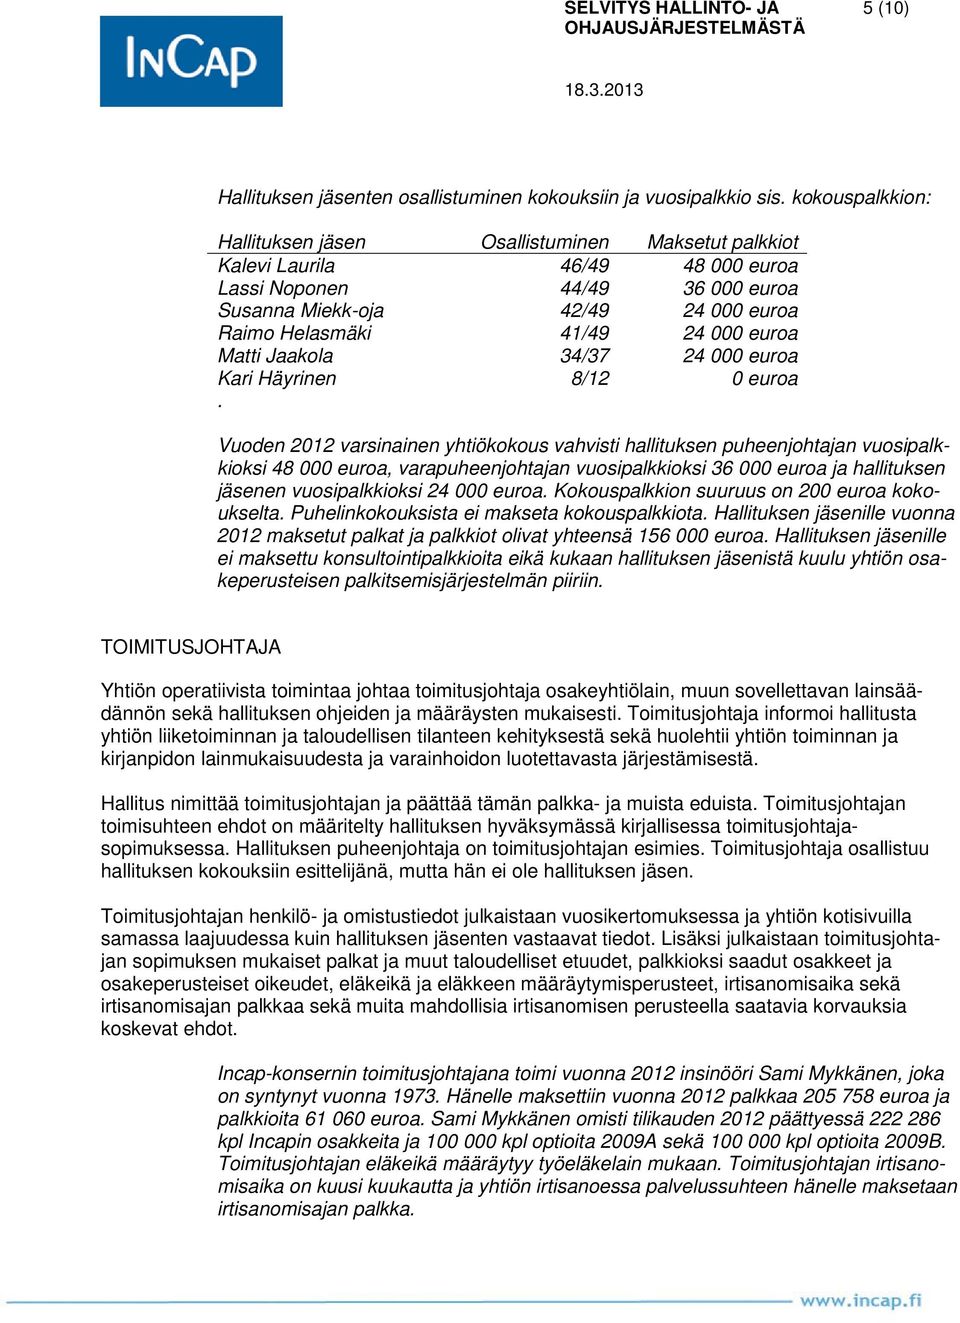 euroa Matti Jaakola 34/37 24 000 euroa Kari Häyrinen 8/12 0 euroa.